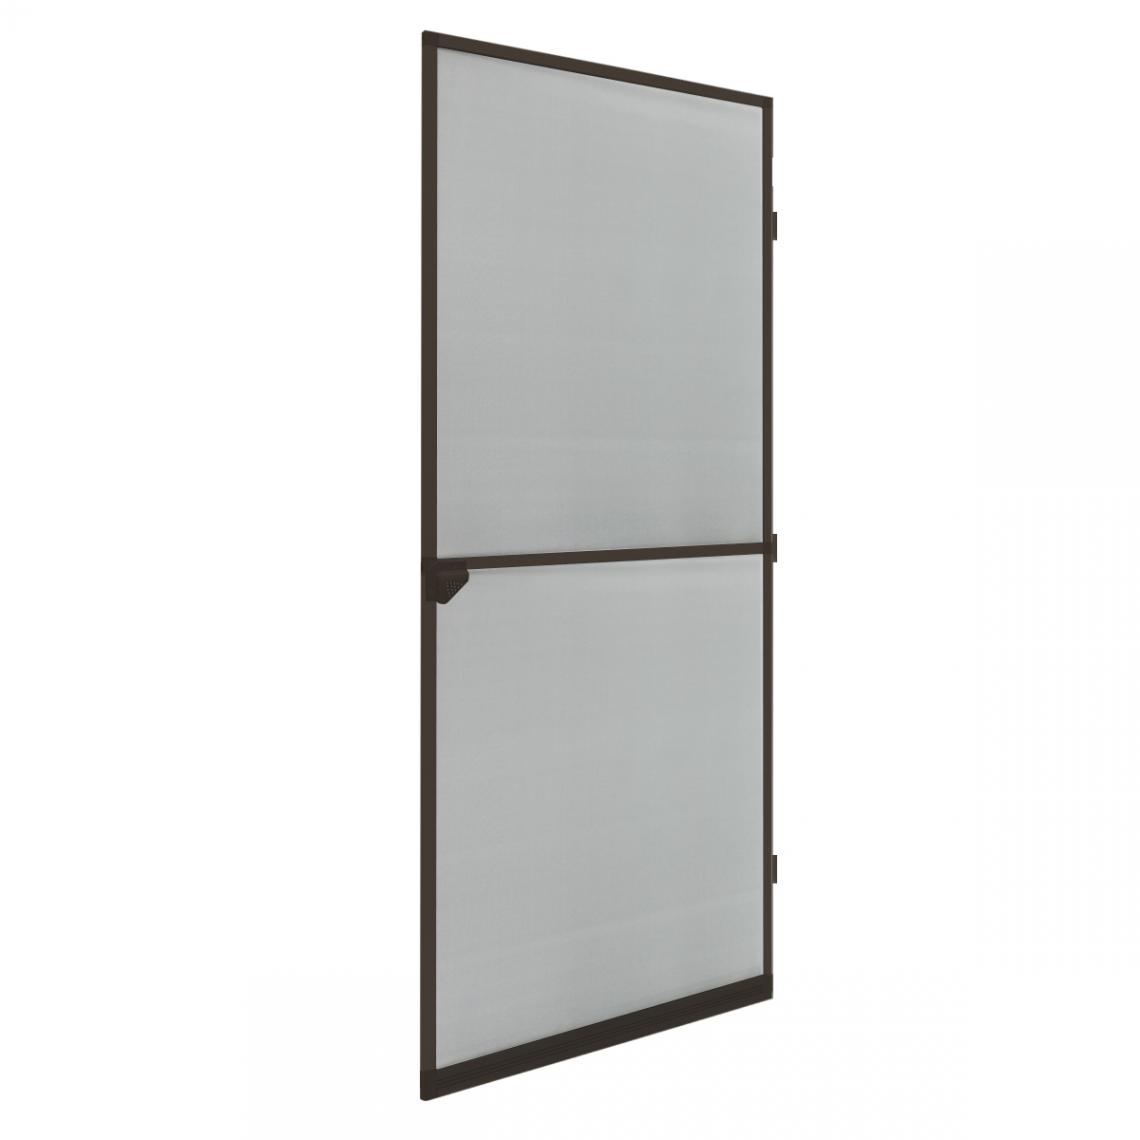 Ecd Germany - Moustiquaire porte en aluminium marron avec tissu de fibre de verre 100 x 220 cm - Moustiquaire Fenêtre